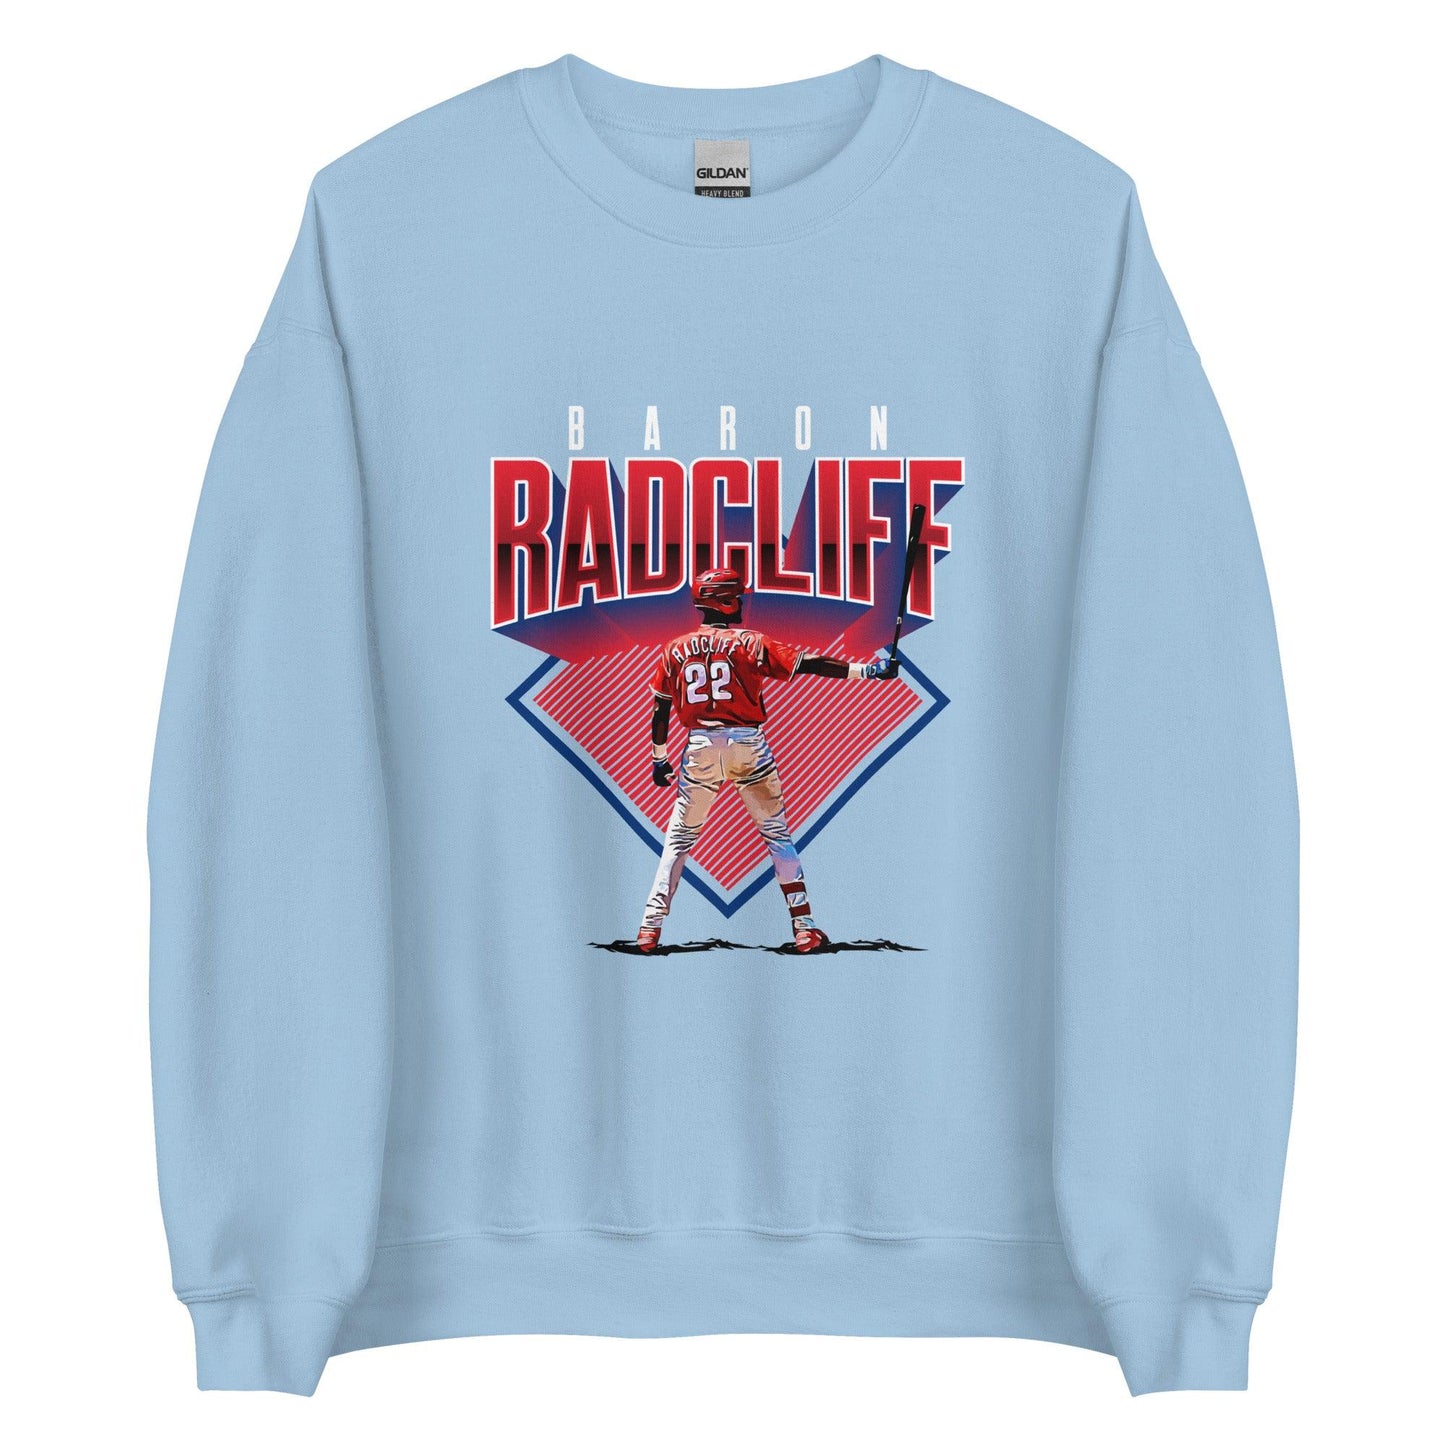 Baron Radcliff "Gameday" Sweatshirt - Fan Arch